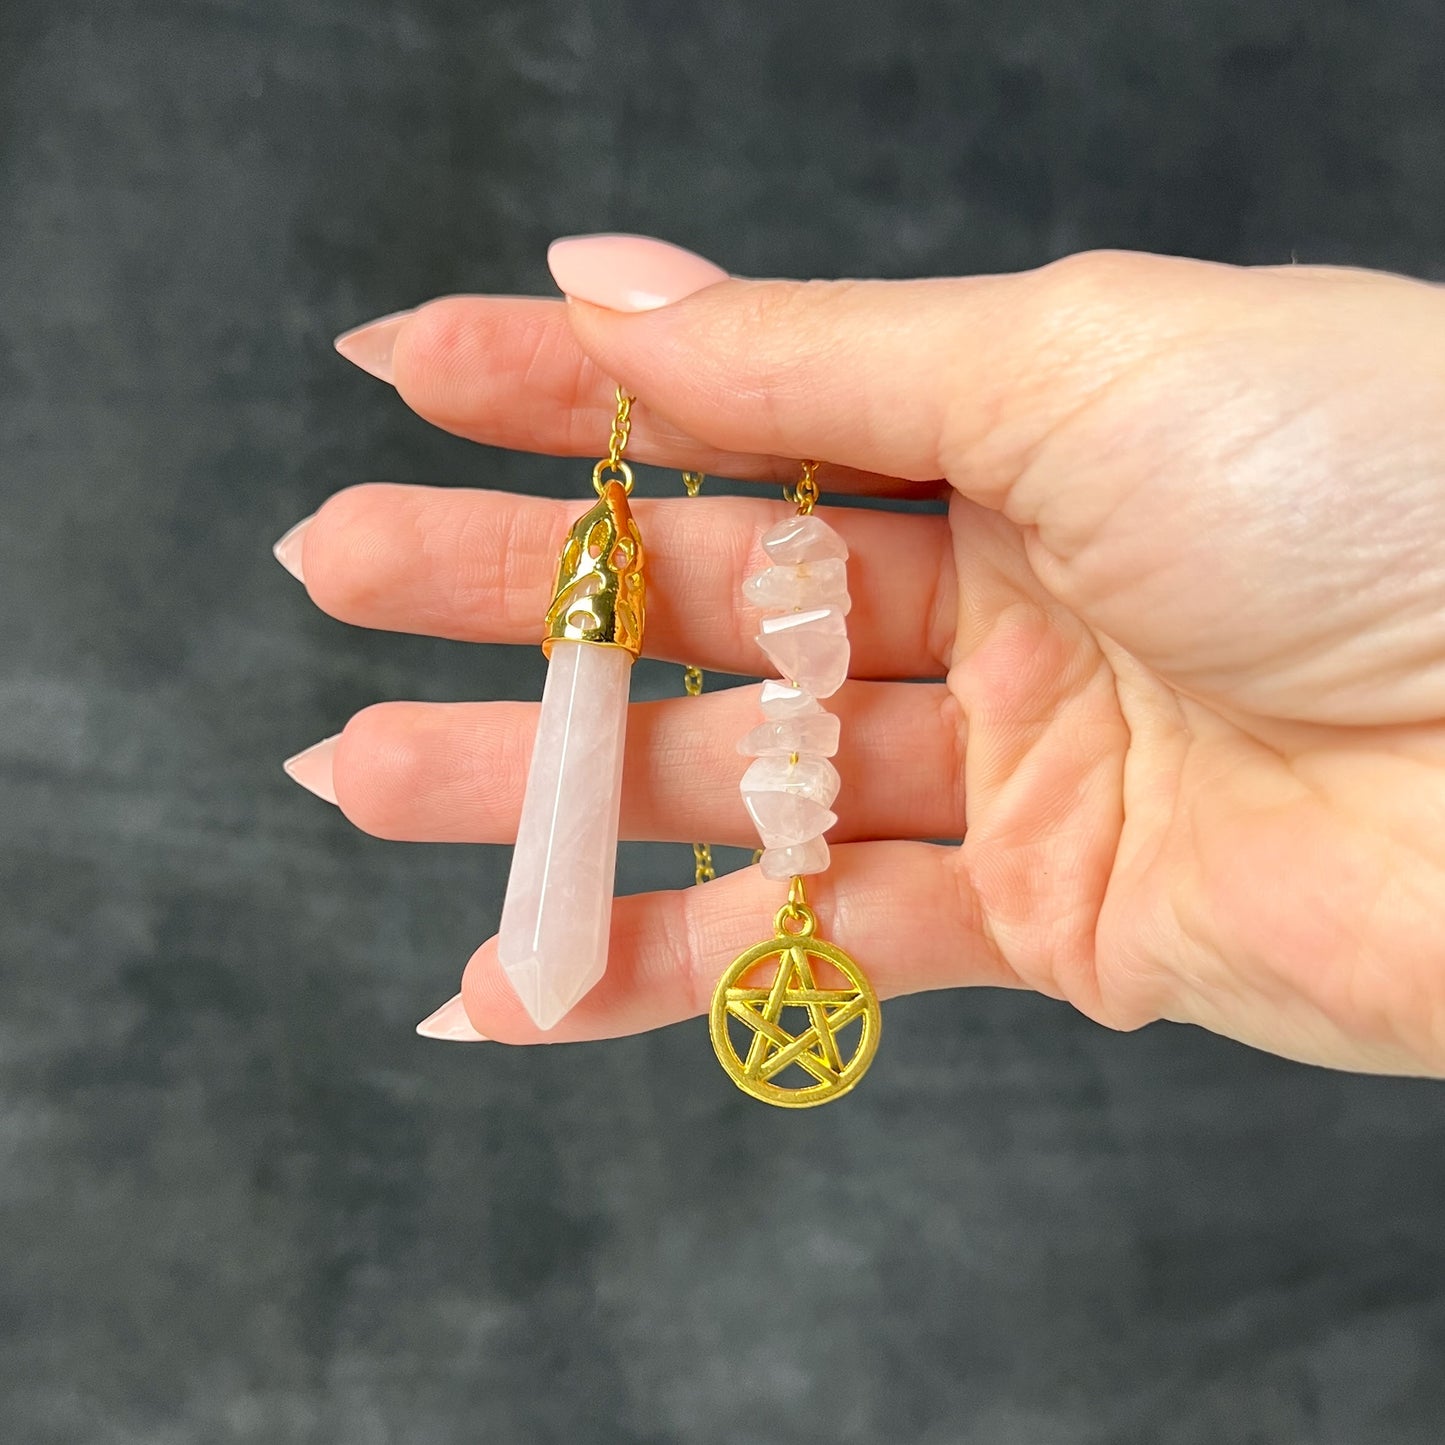 Golden Rose quartz pentacle pendulum Baguette Magick